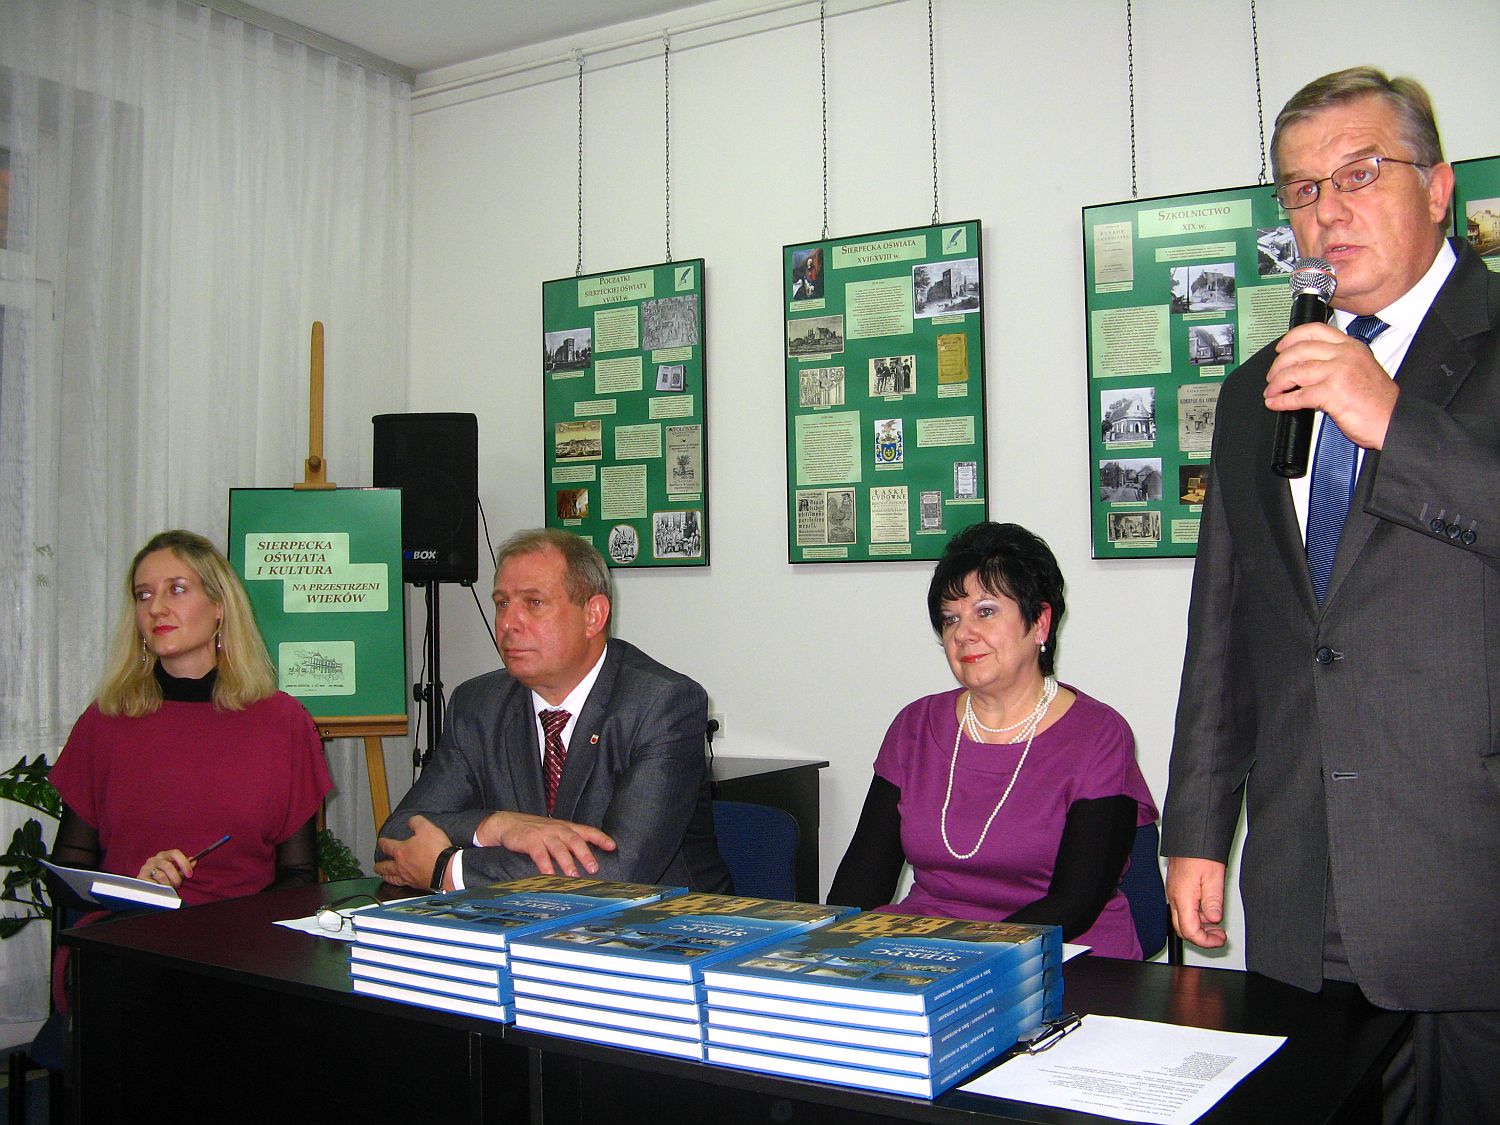 Burmistrz Marek Komider opowiedzia o chwili, gdy zrodzia si idea powstania albumu.